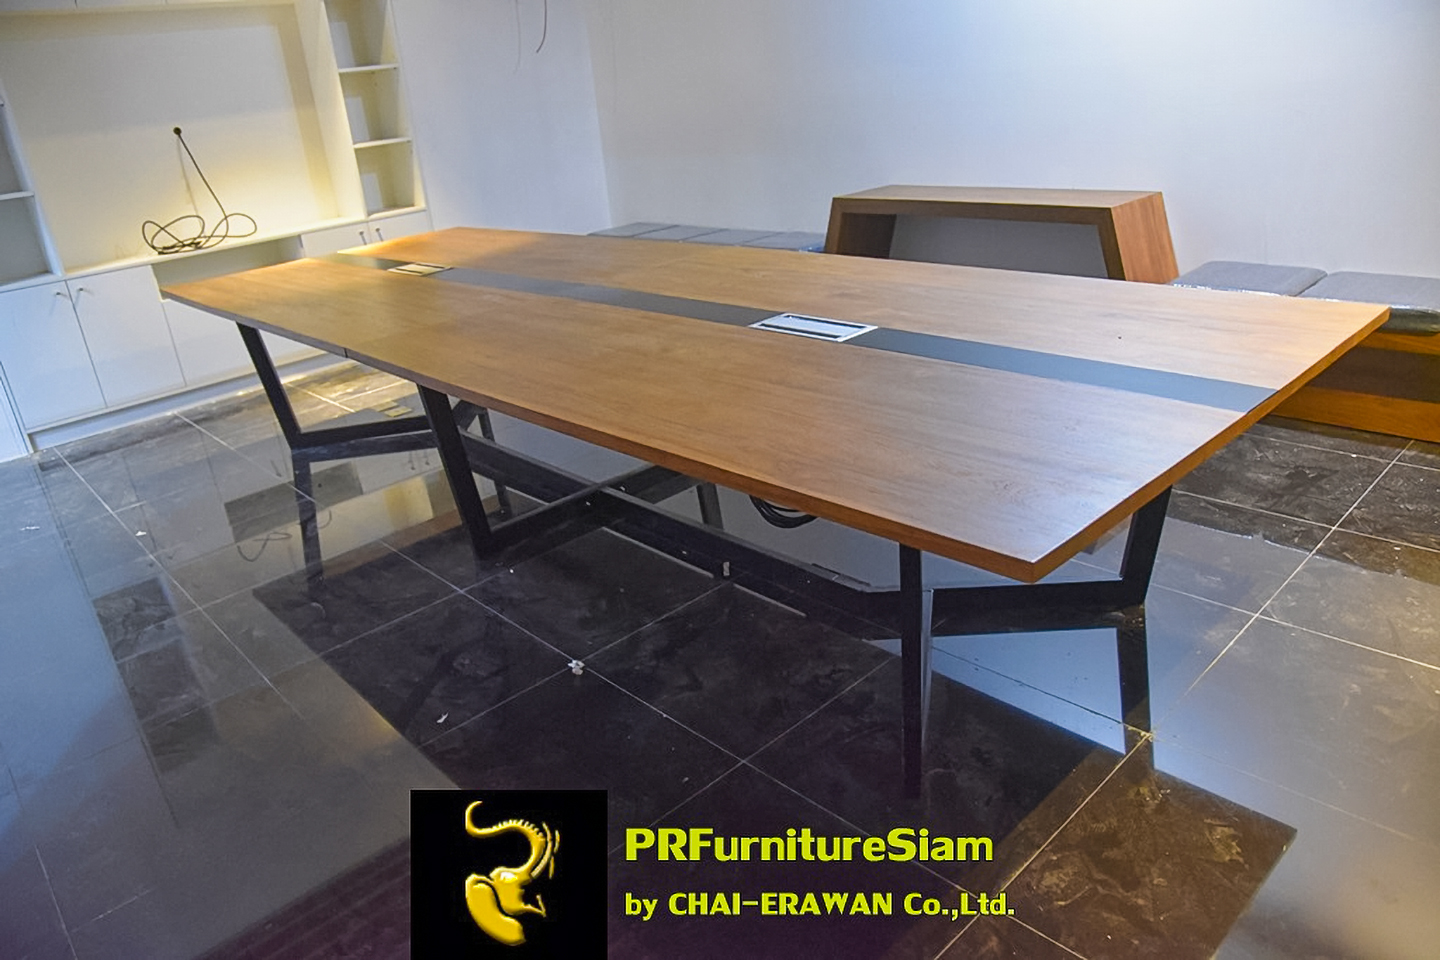 โต๊ะประชุมขนาดใหญ่ไม้สักพร้อมคาดไม้สีดำที่ติชะวณิชย์